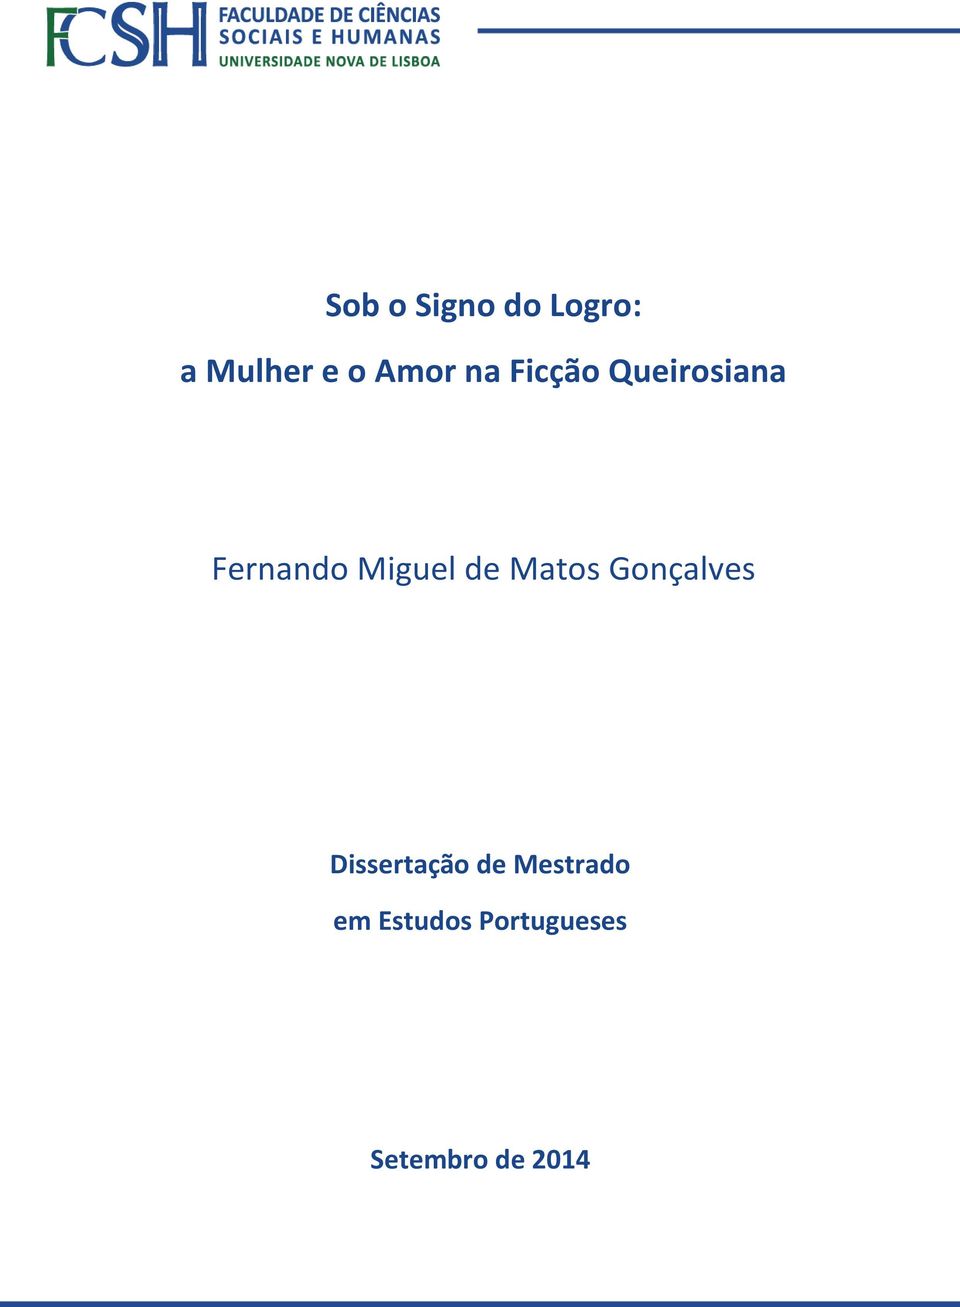 Dissertação de Mestrado em Estudos Portugueses